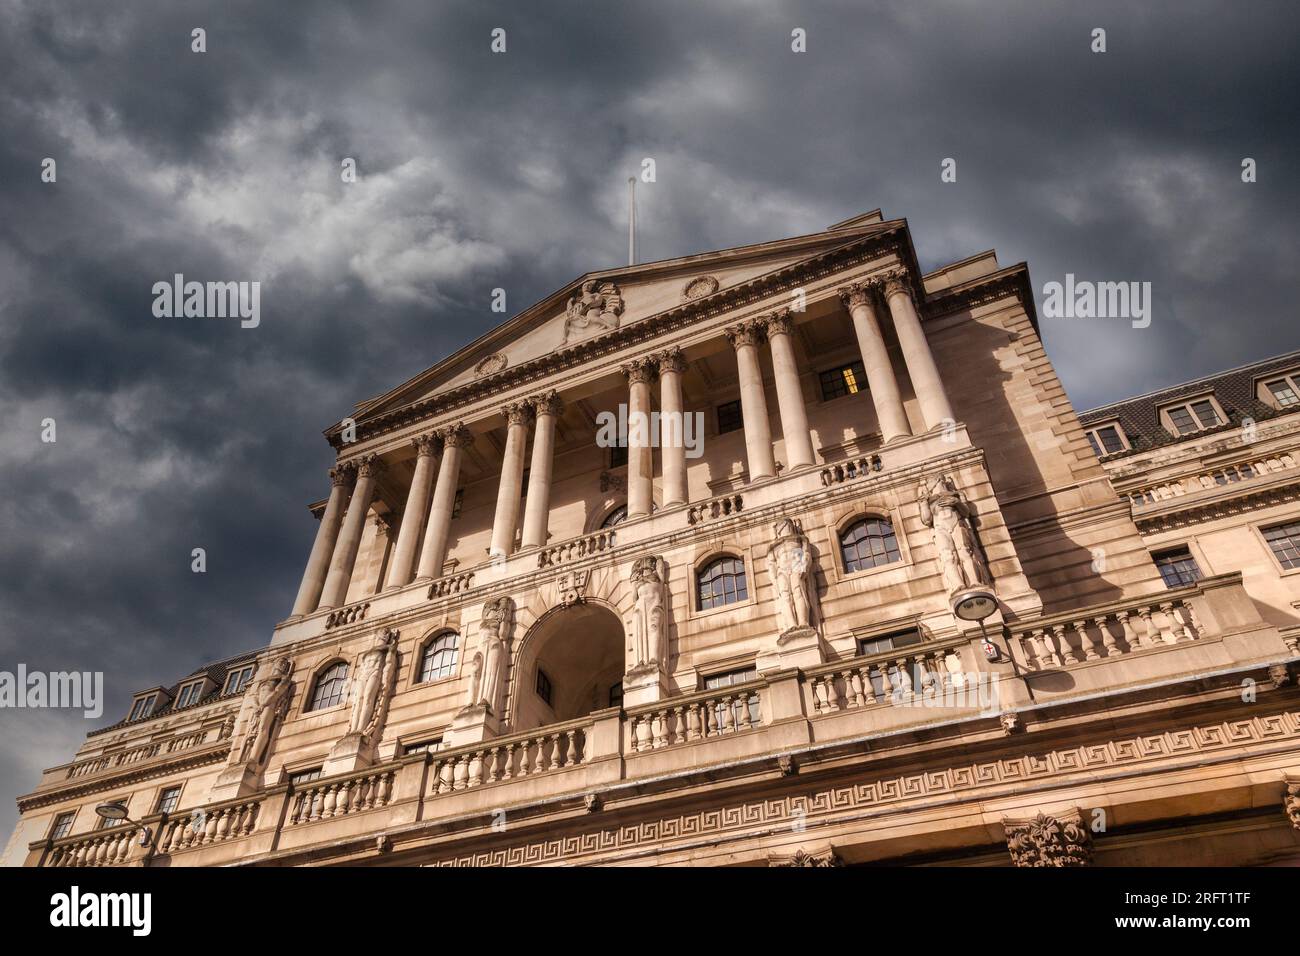 Banque d'Angleterre, avec un ciel noir orageux au-dessus. Concepts de problèmes, soucis financiers, hausses de taux d'intérêt. Threadneedle Stree, Londres, Royaume-Uni. Banque D'Images